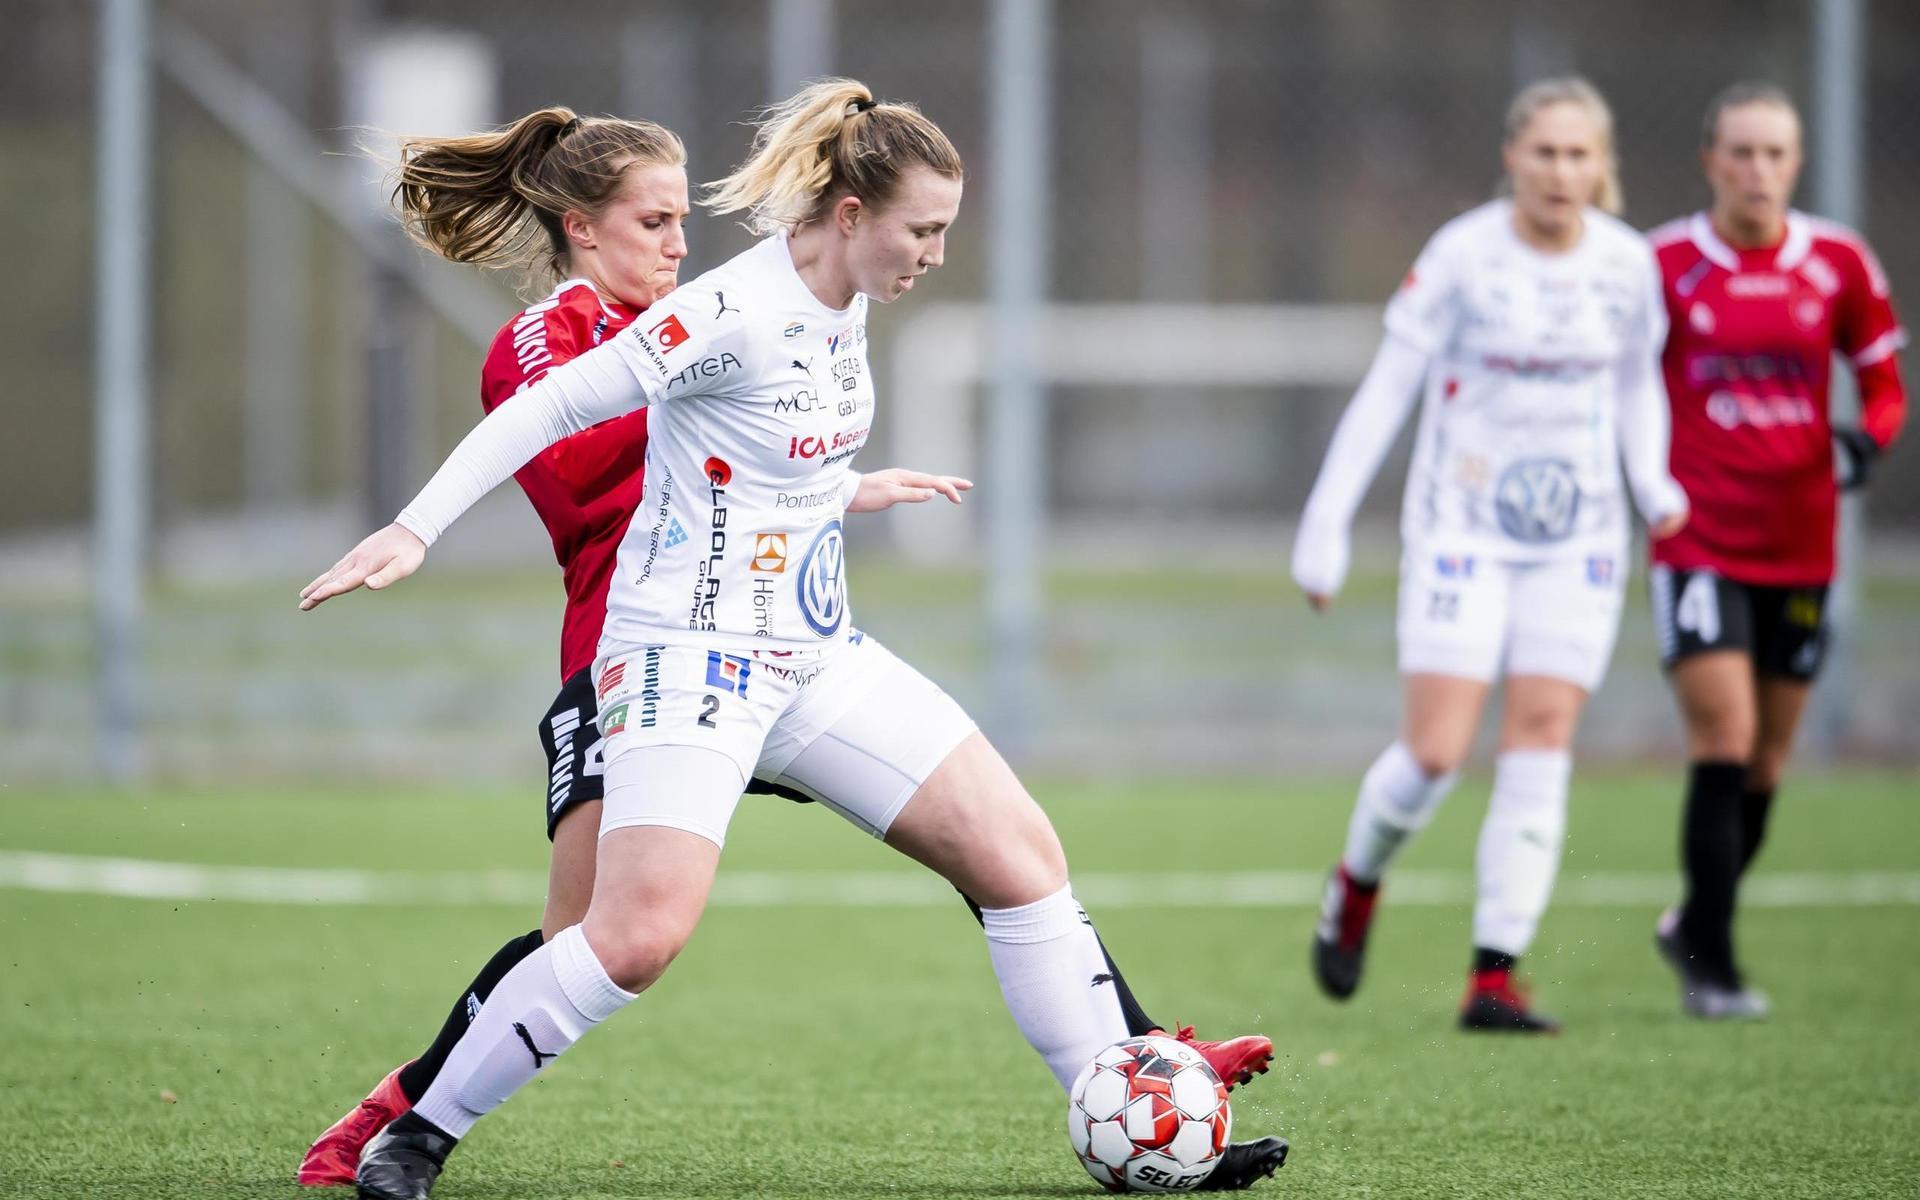 Halmiabekanta Selma Berggren går från Kalmar till IFK Norrköping.